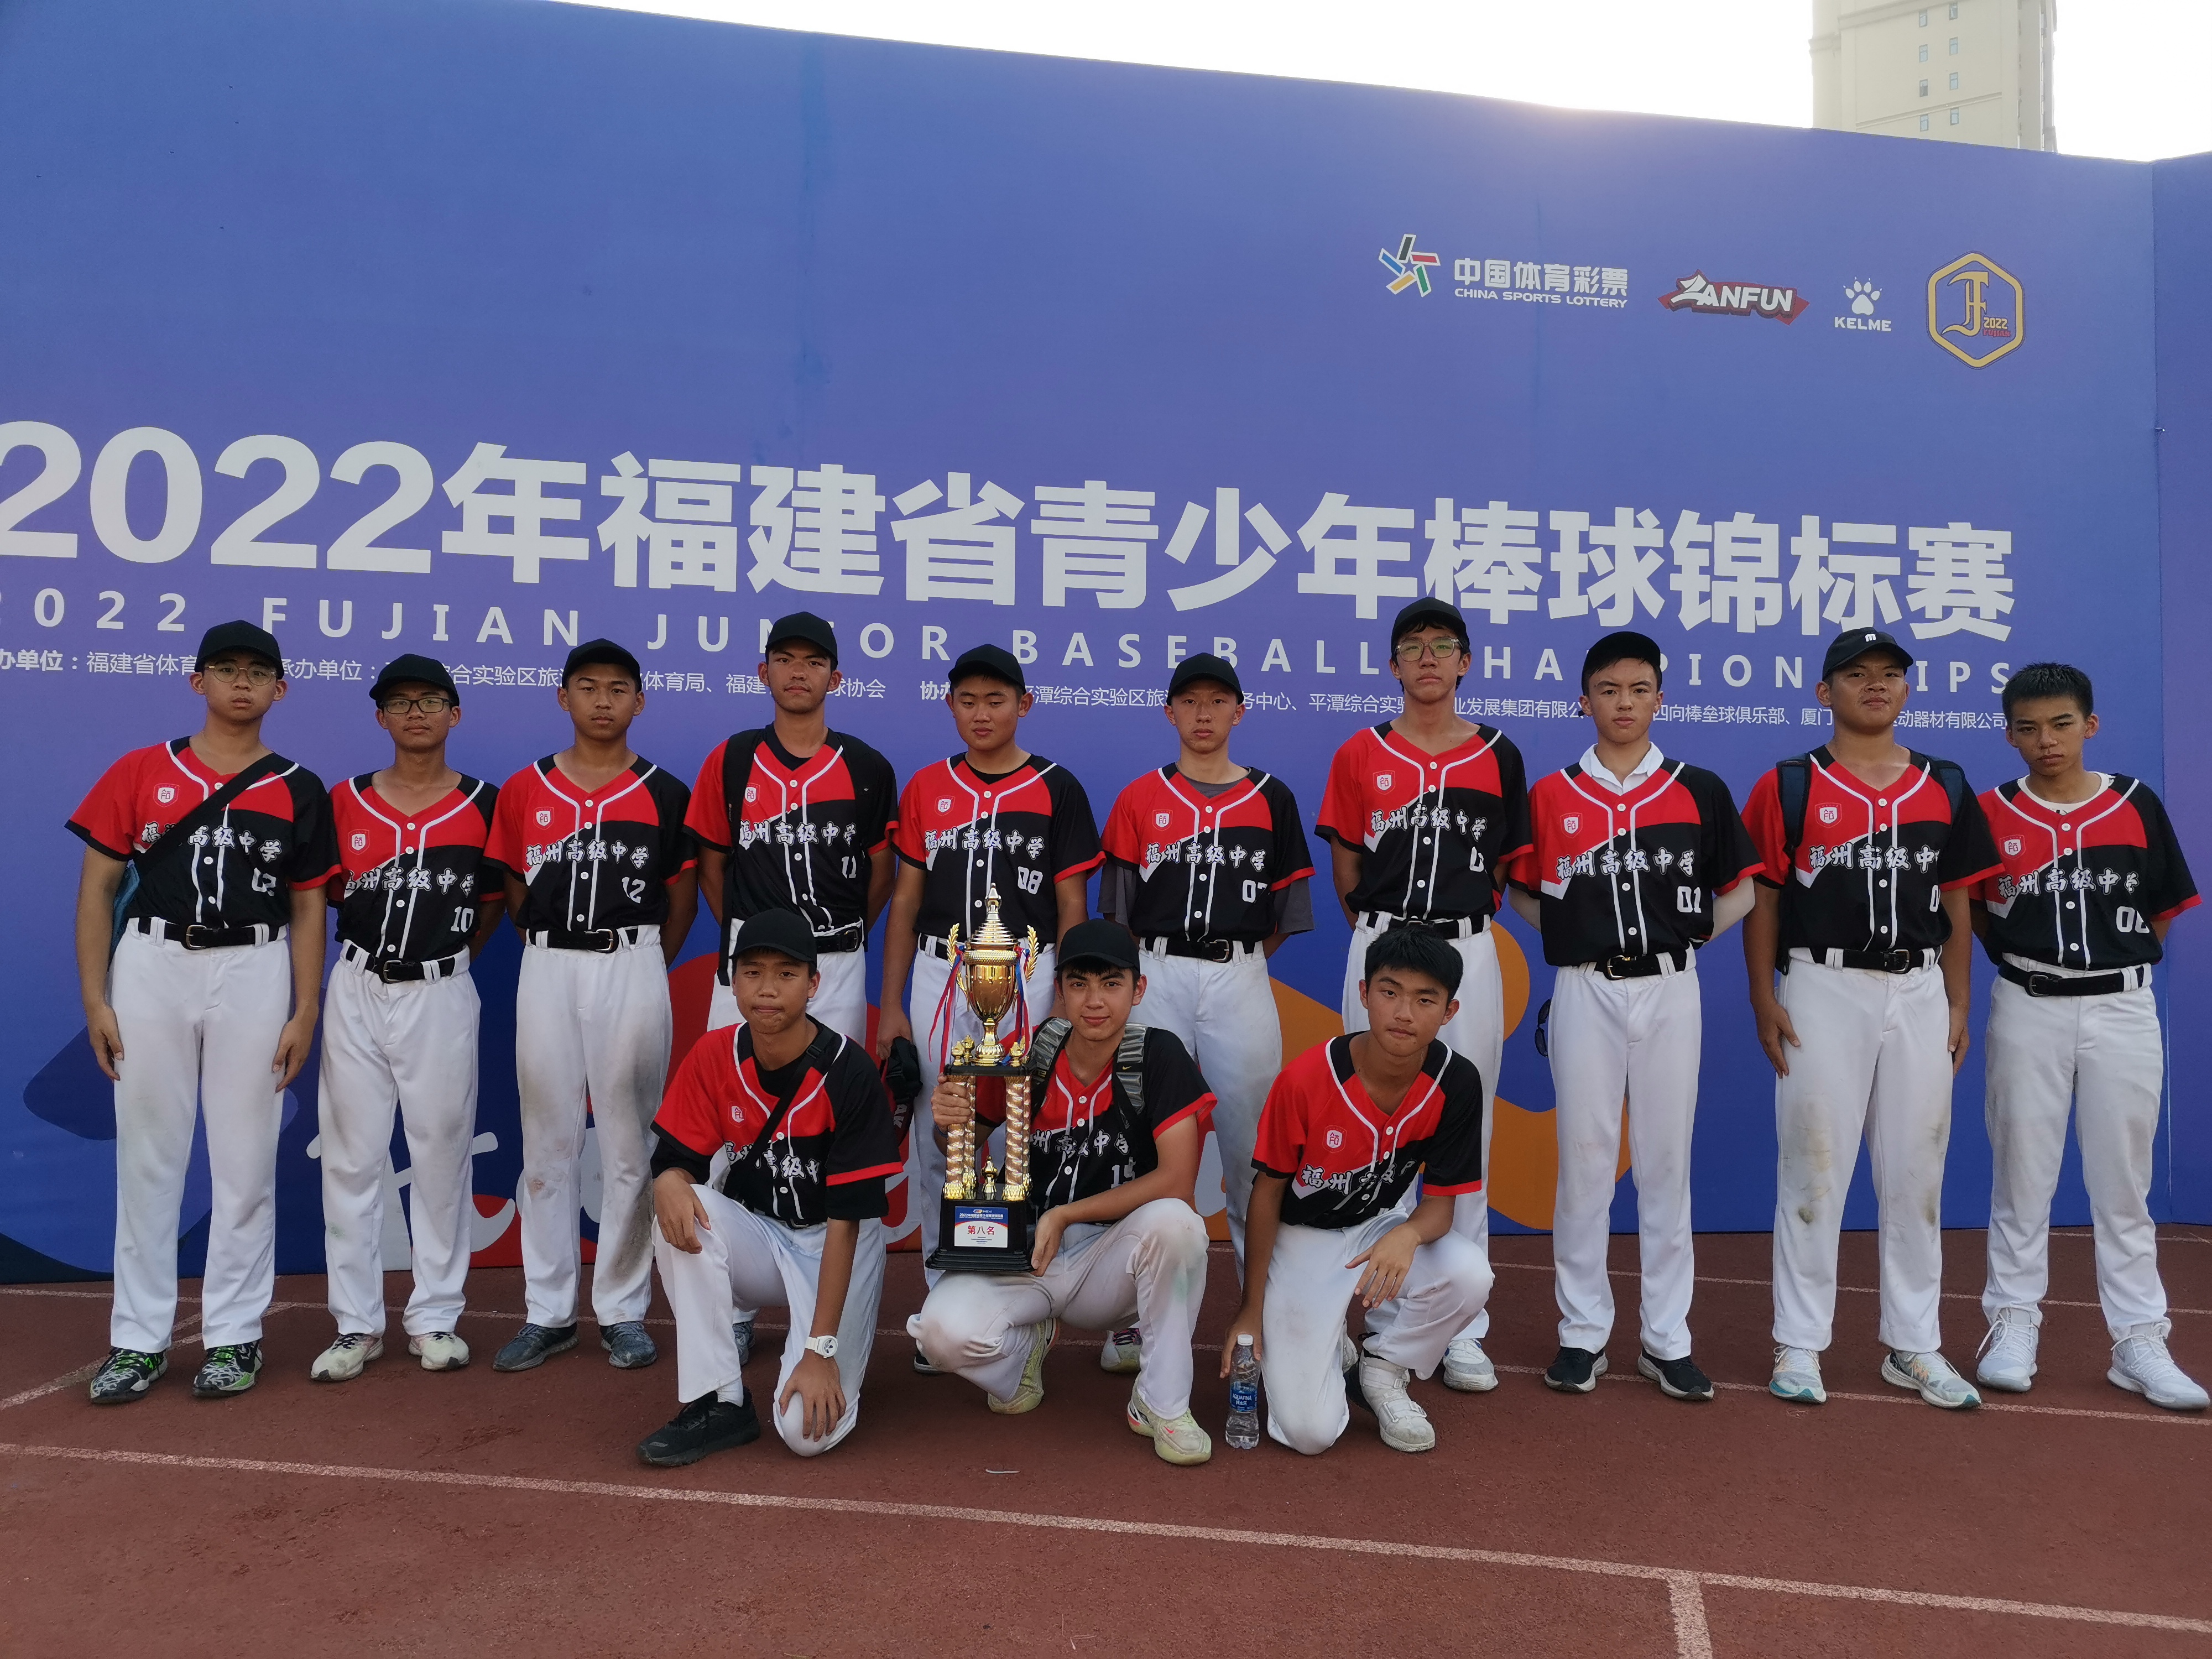 我校获得2022年福建省青少年棒球锦标赛第八名